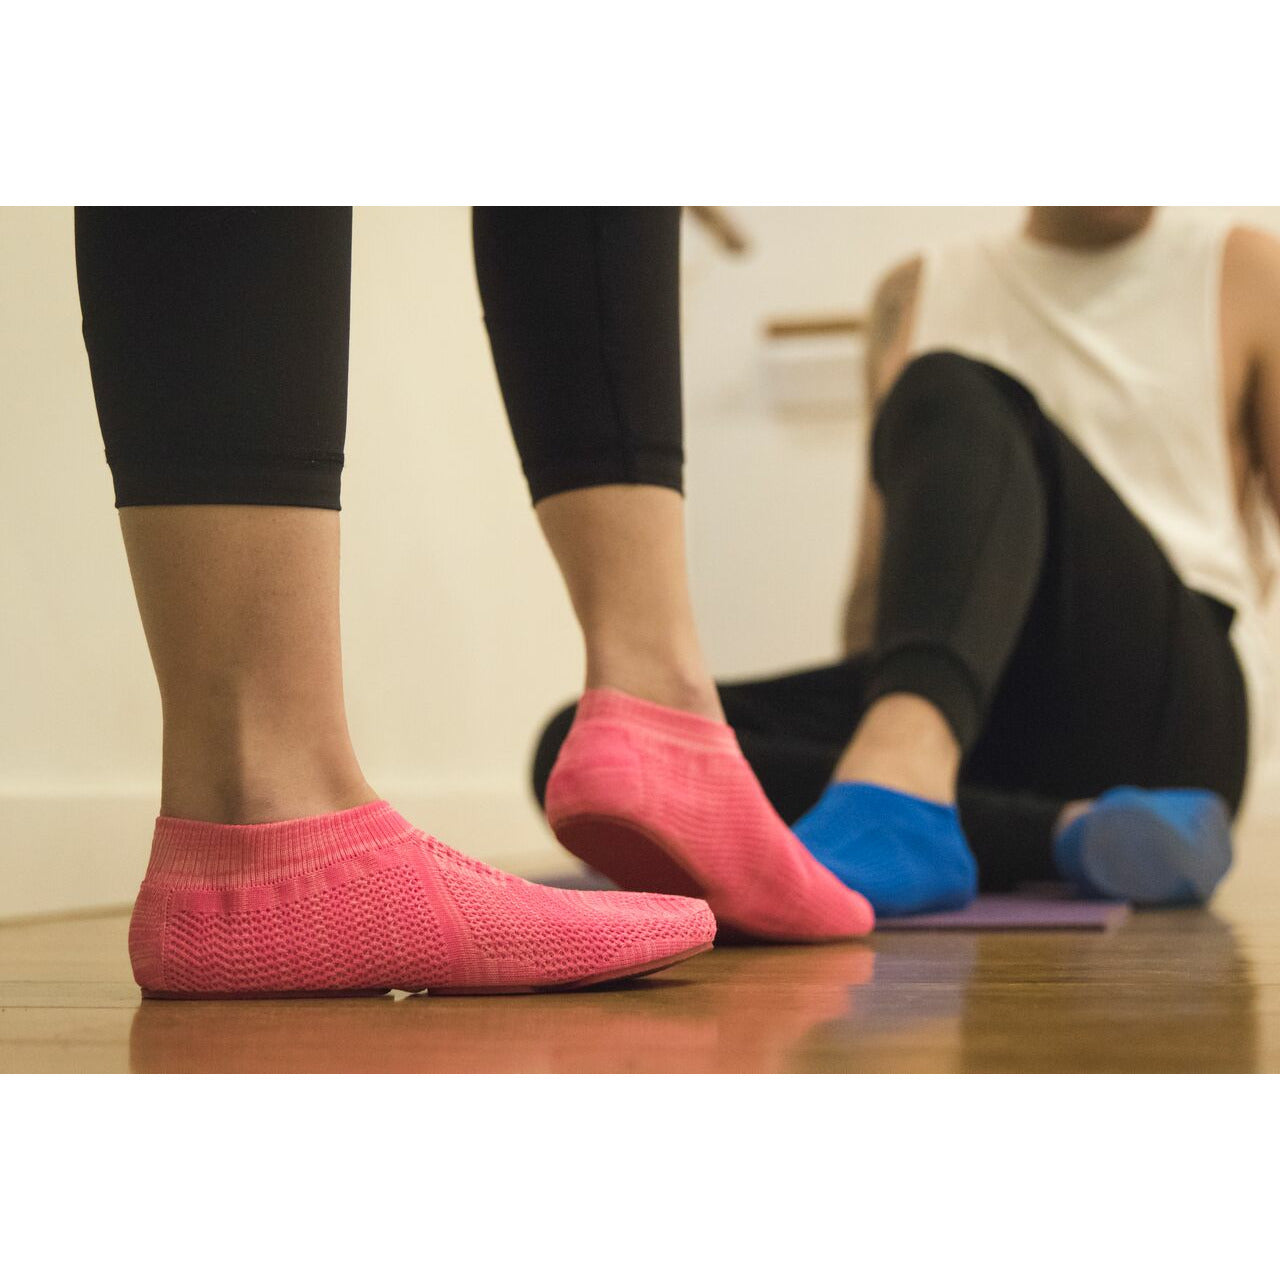 XtremeKinetic Minimal training shoes pink/pink size US WOMEN(8-9)   EURO SIZE 39-40